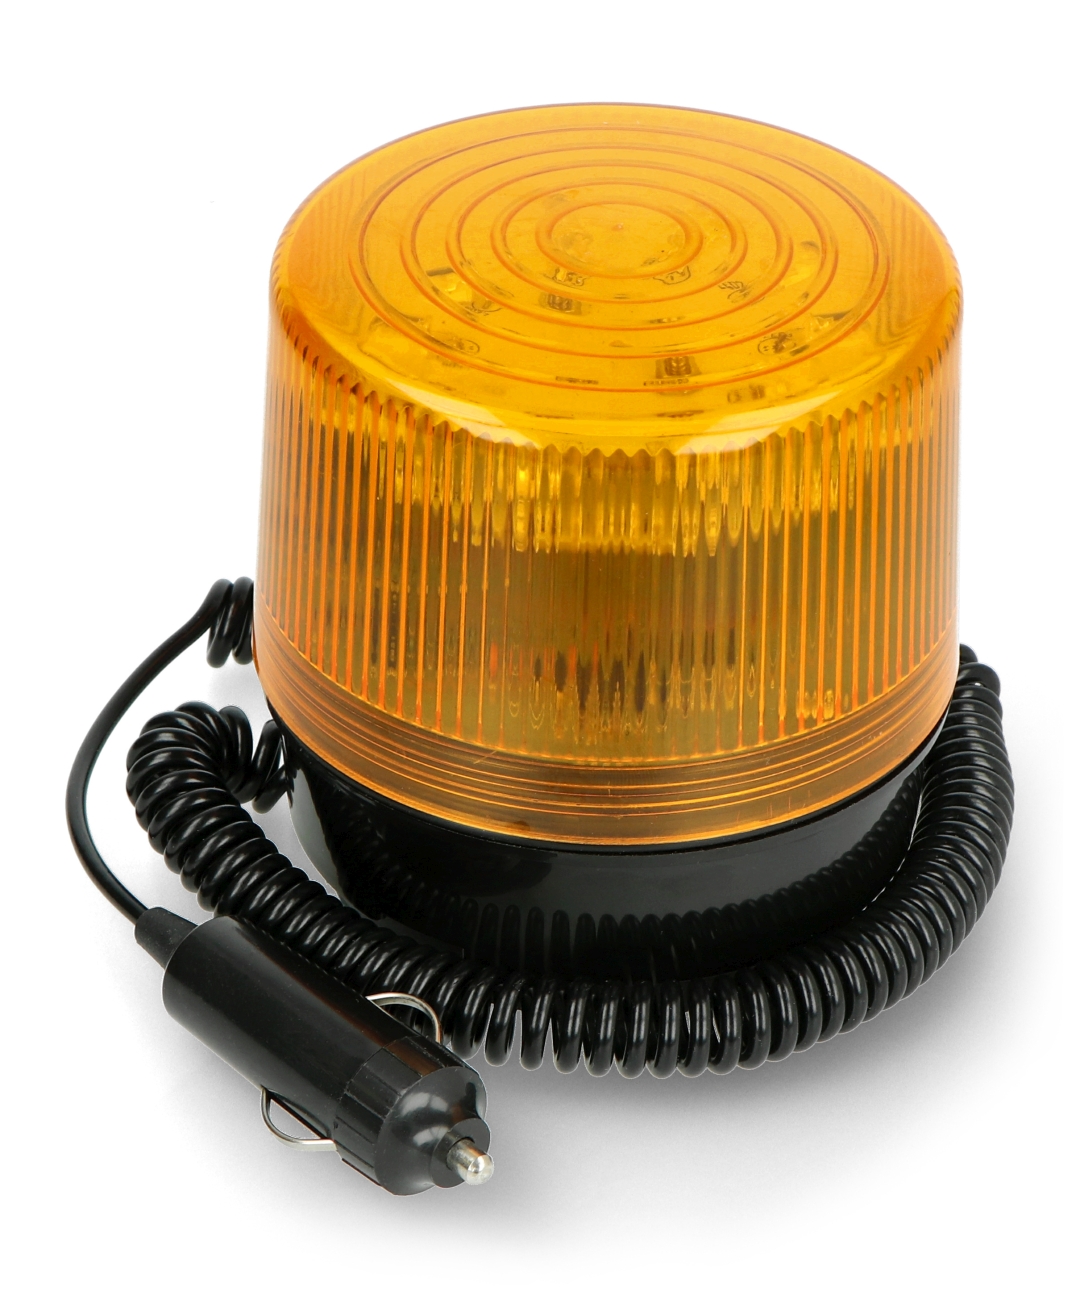 Magnet-Signallampe - LED 12V - Botland - Robotikgeschäft